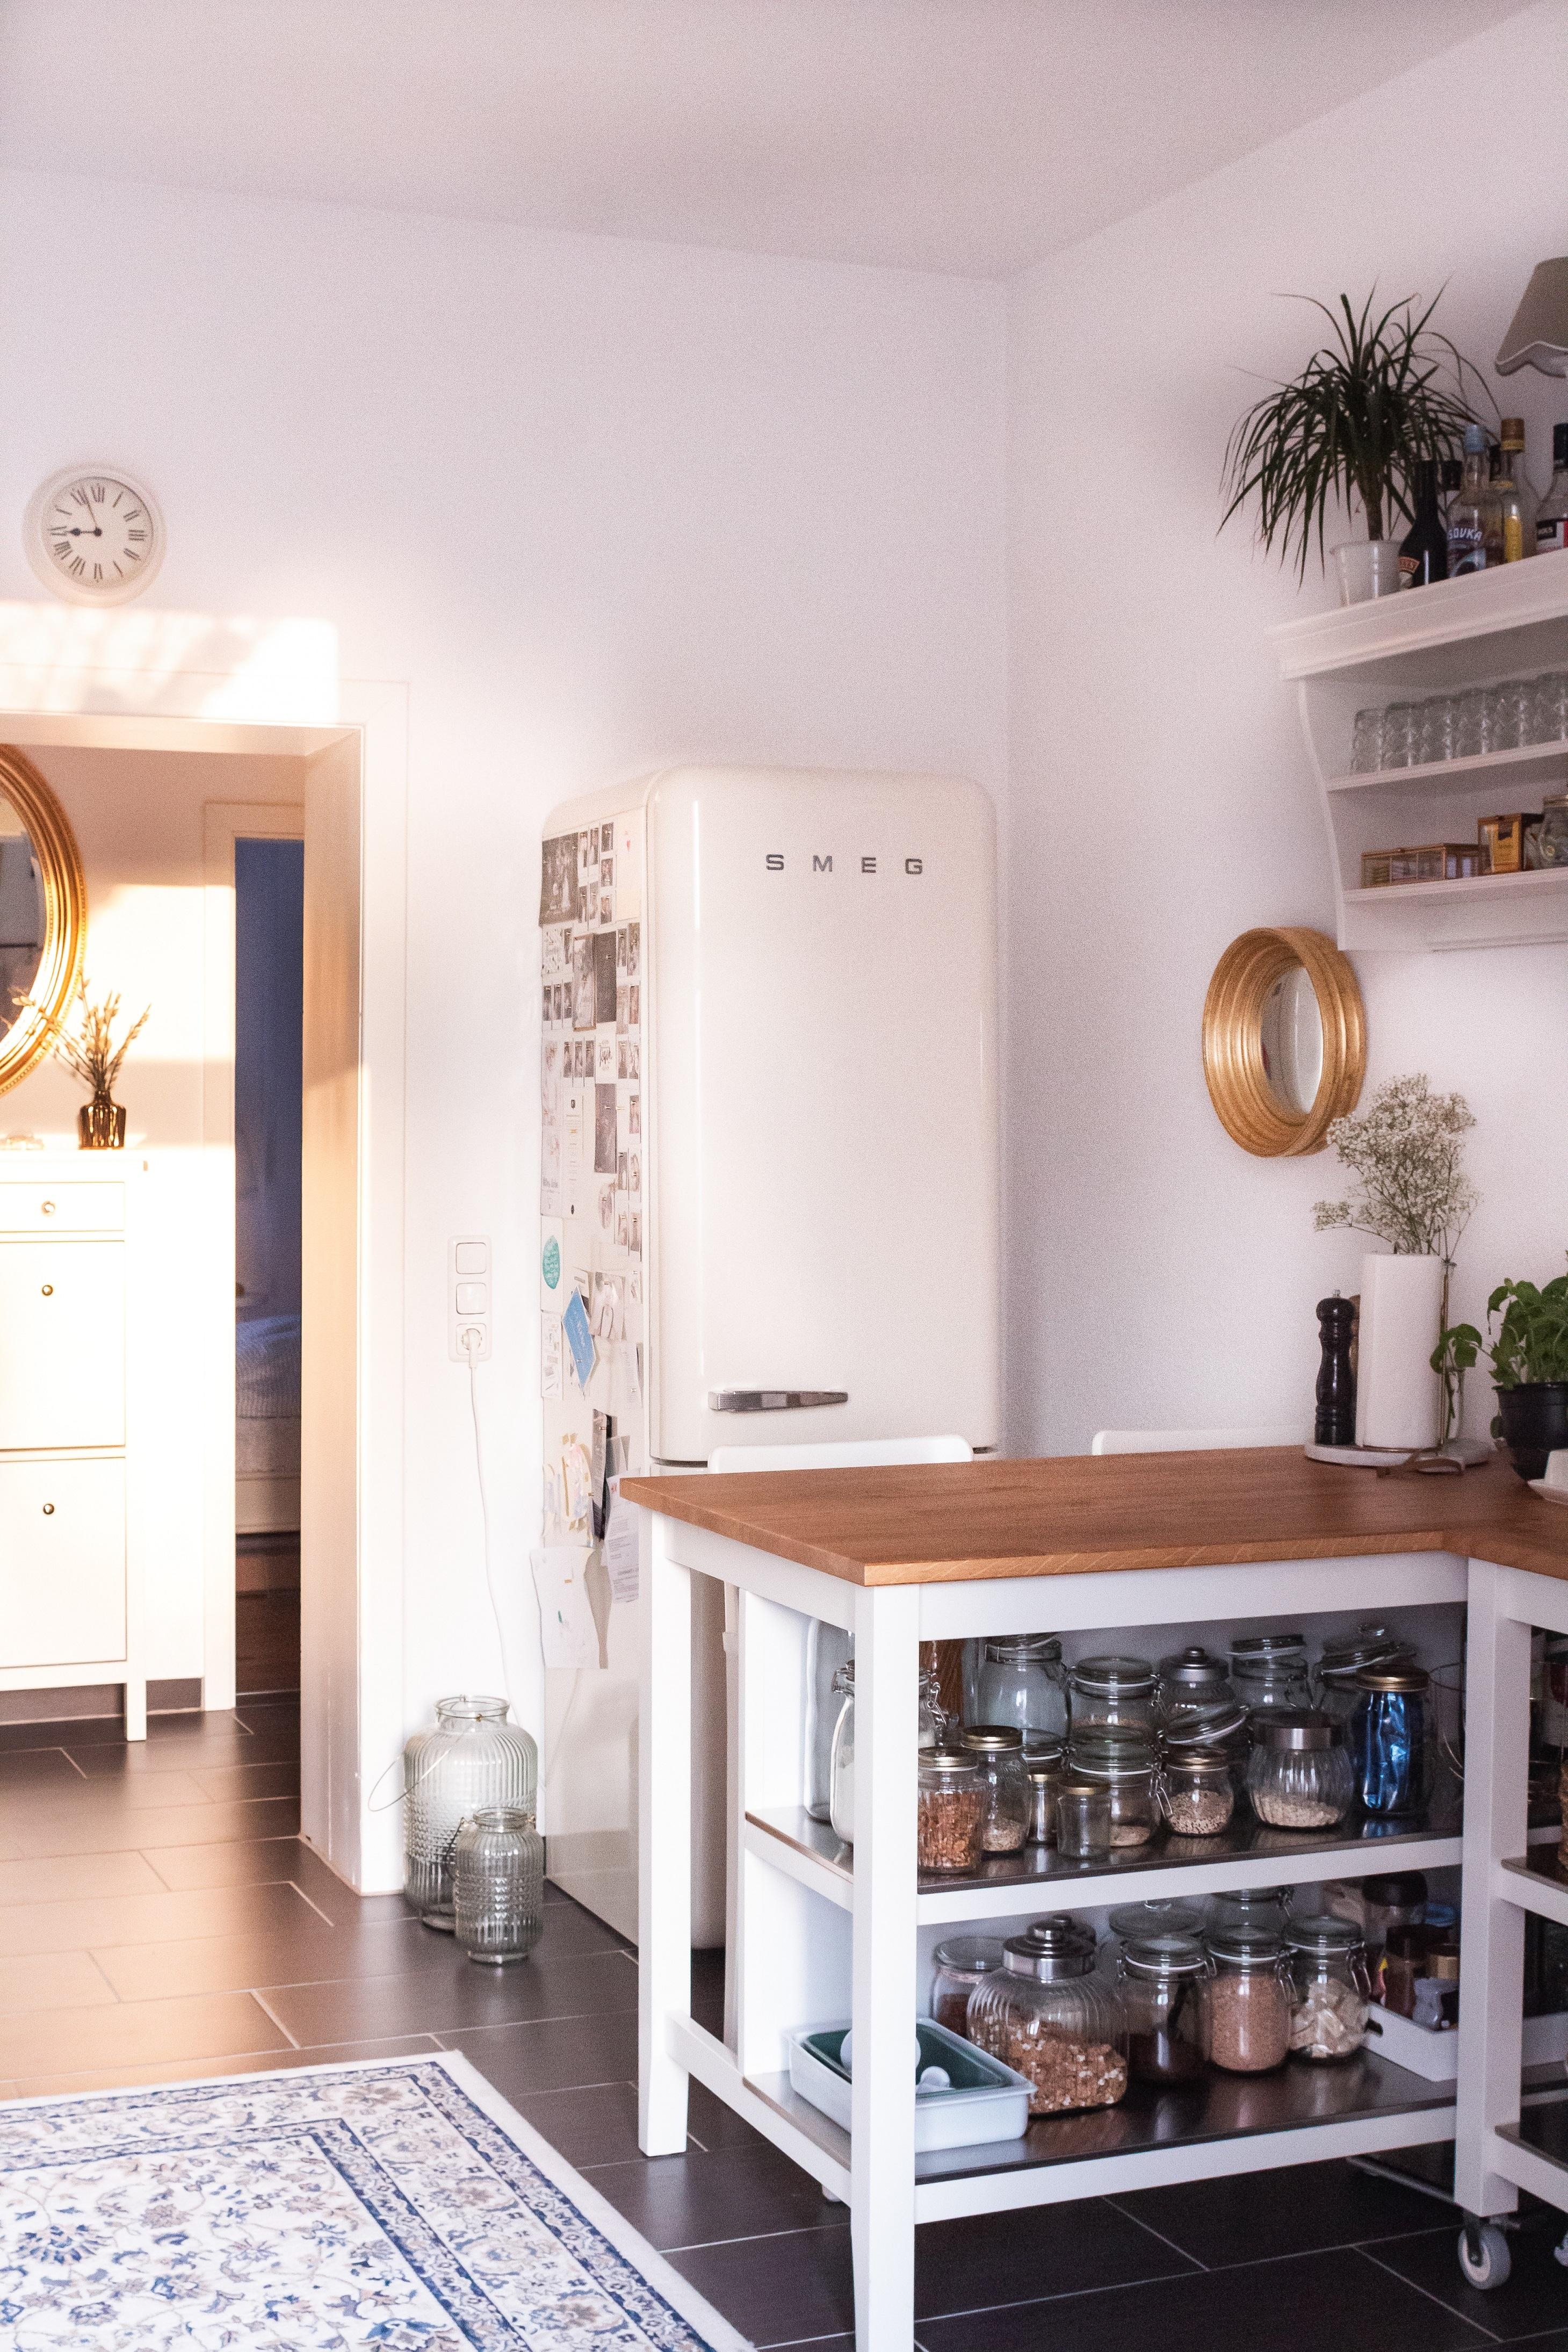 Unsere Küche. 
#andereseite #kitchen #smeg #home #küche #offeneküche #cozy 